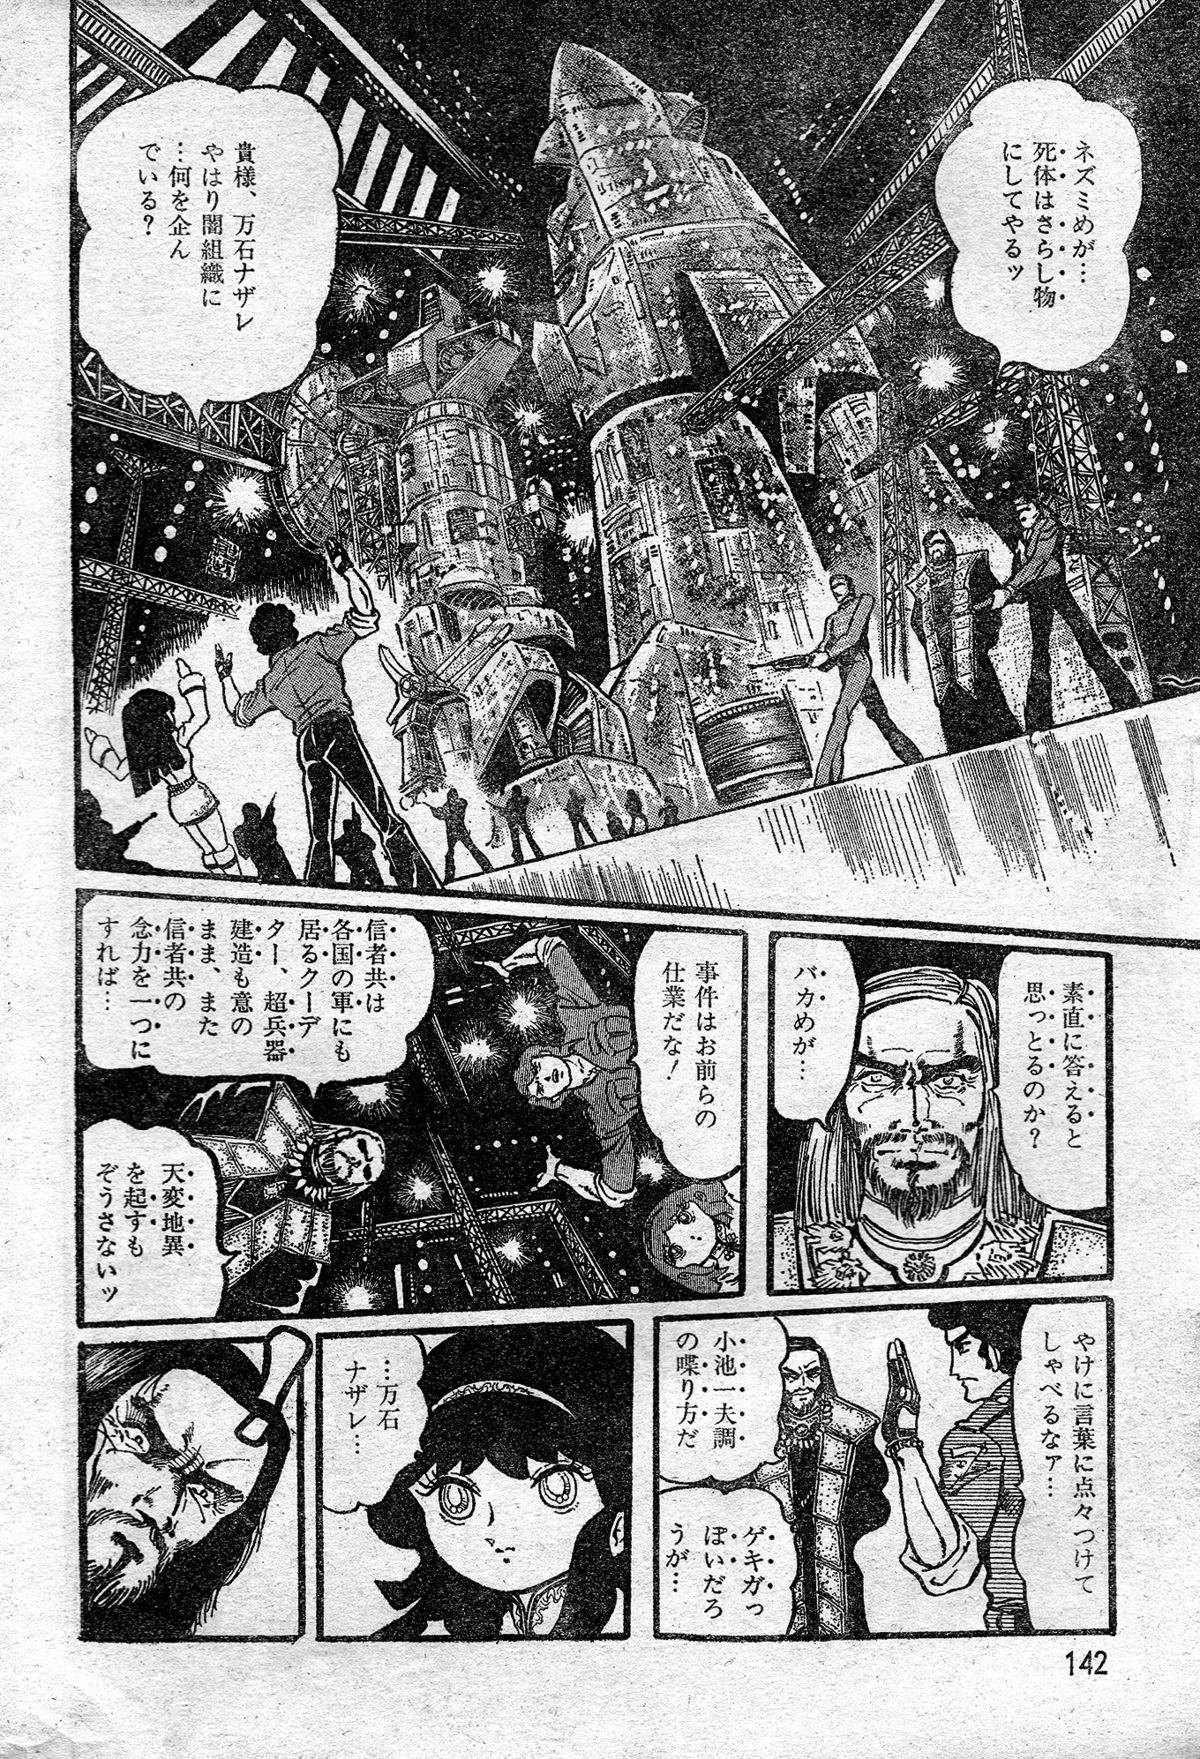 [破李拳竜] 撃殺!宇宙拳 第一章 (レモンピープル #2, 1982年3月)